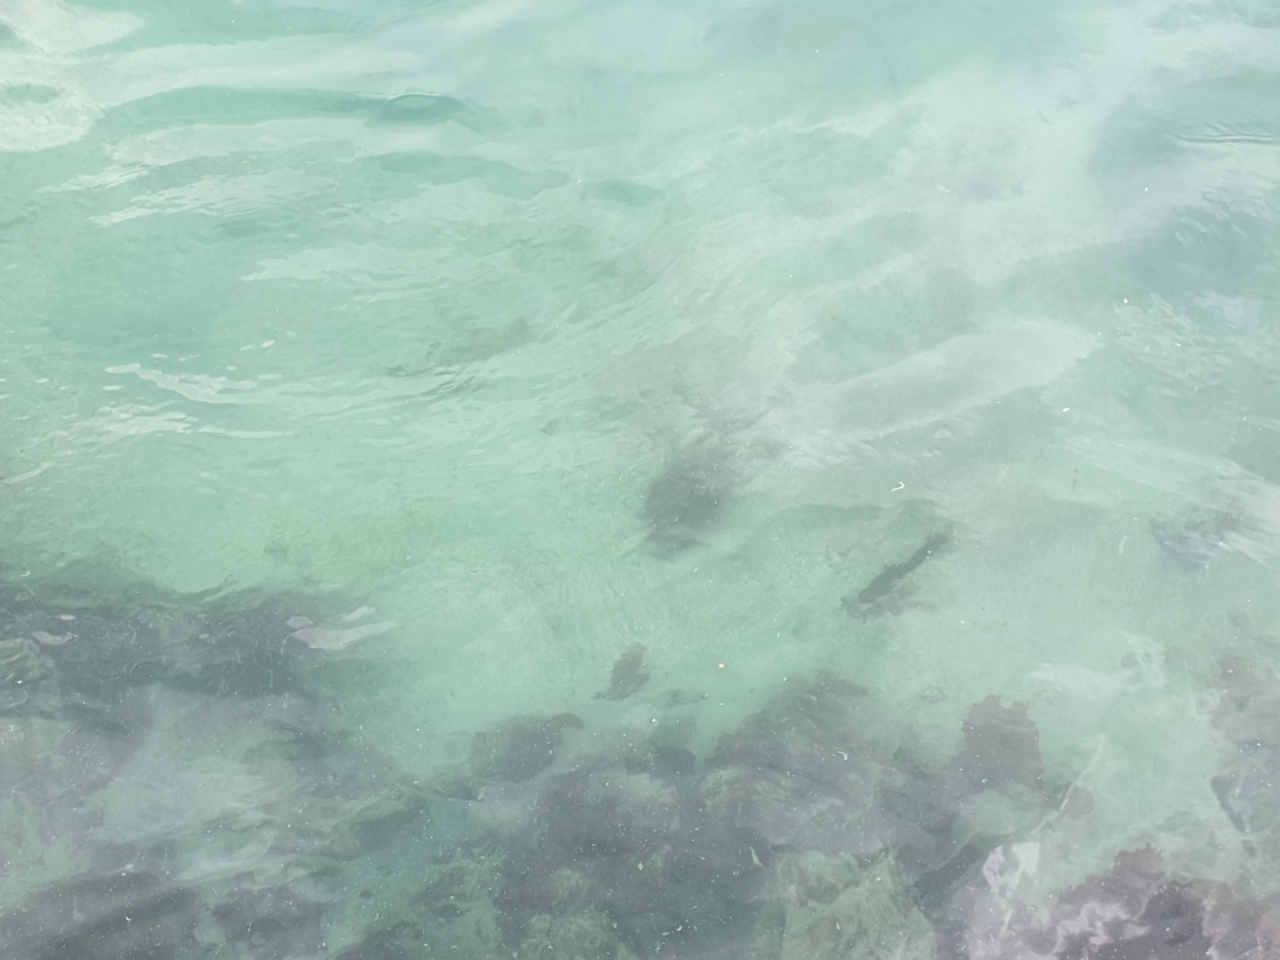 5일 행원육상양식단지 앞 바다에 죽어 있는 광어